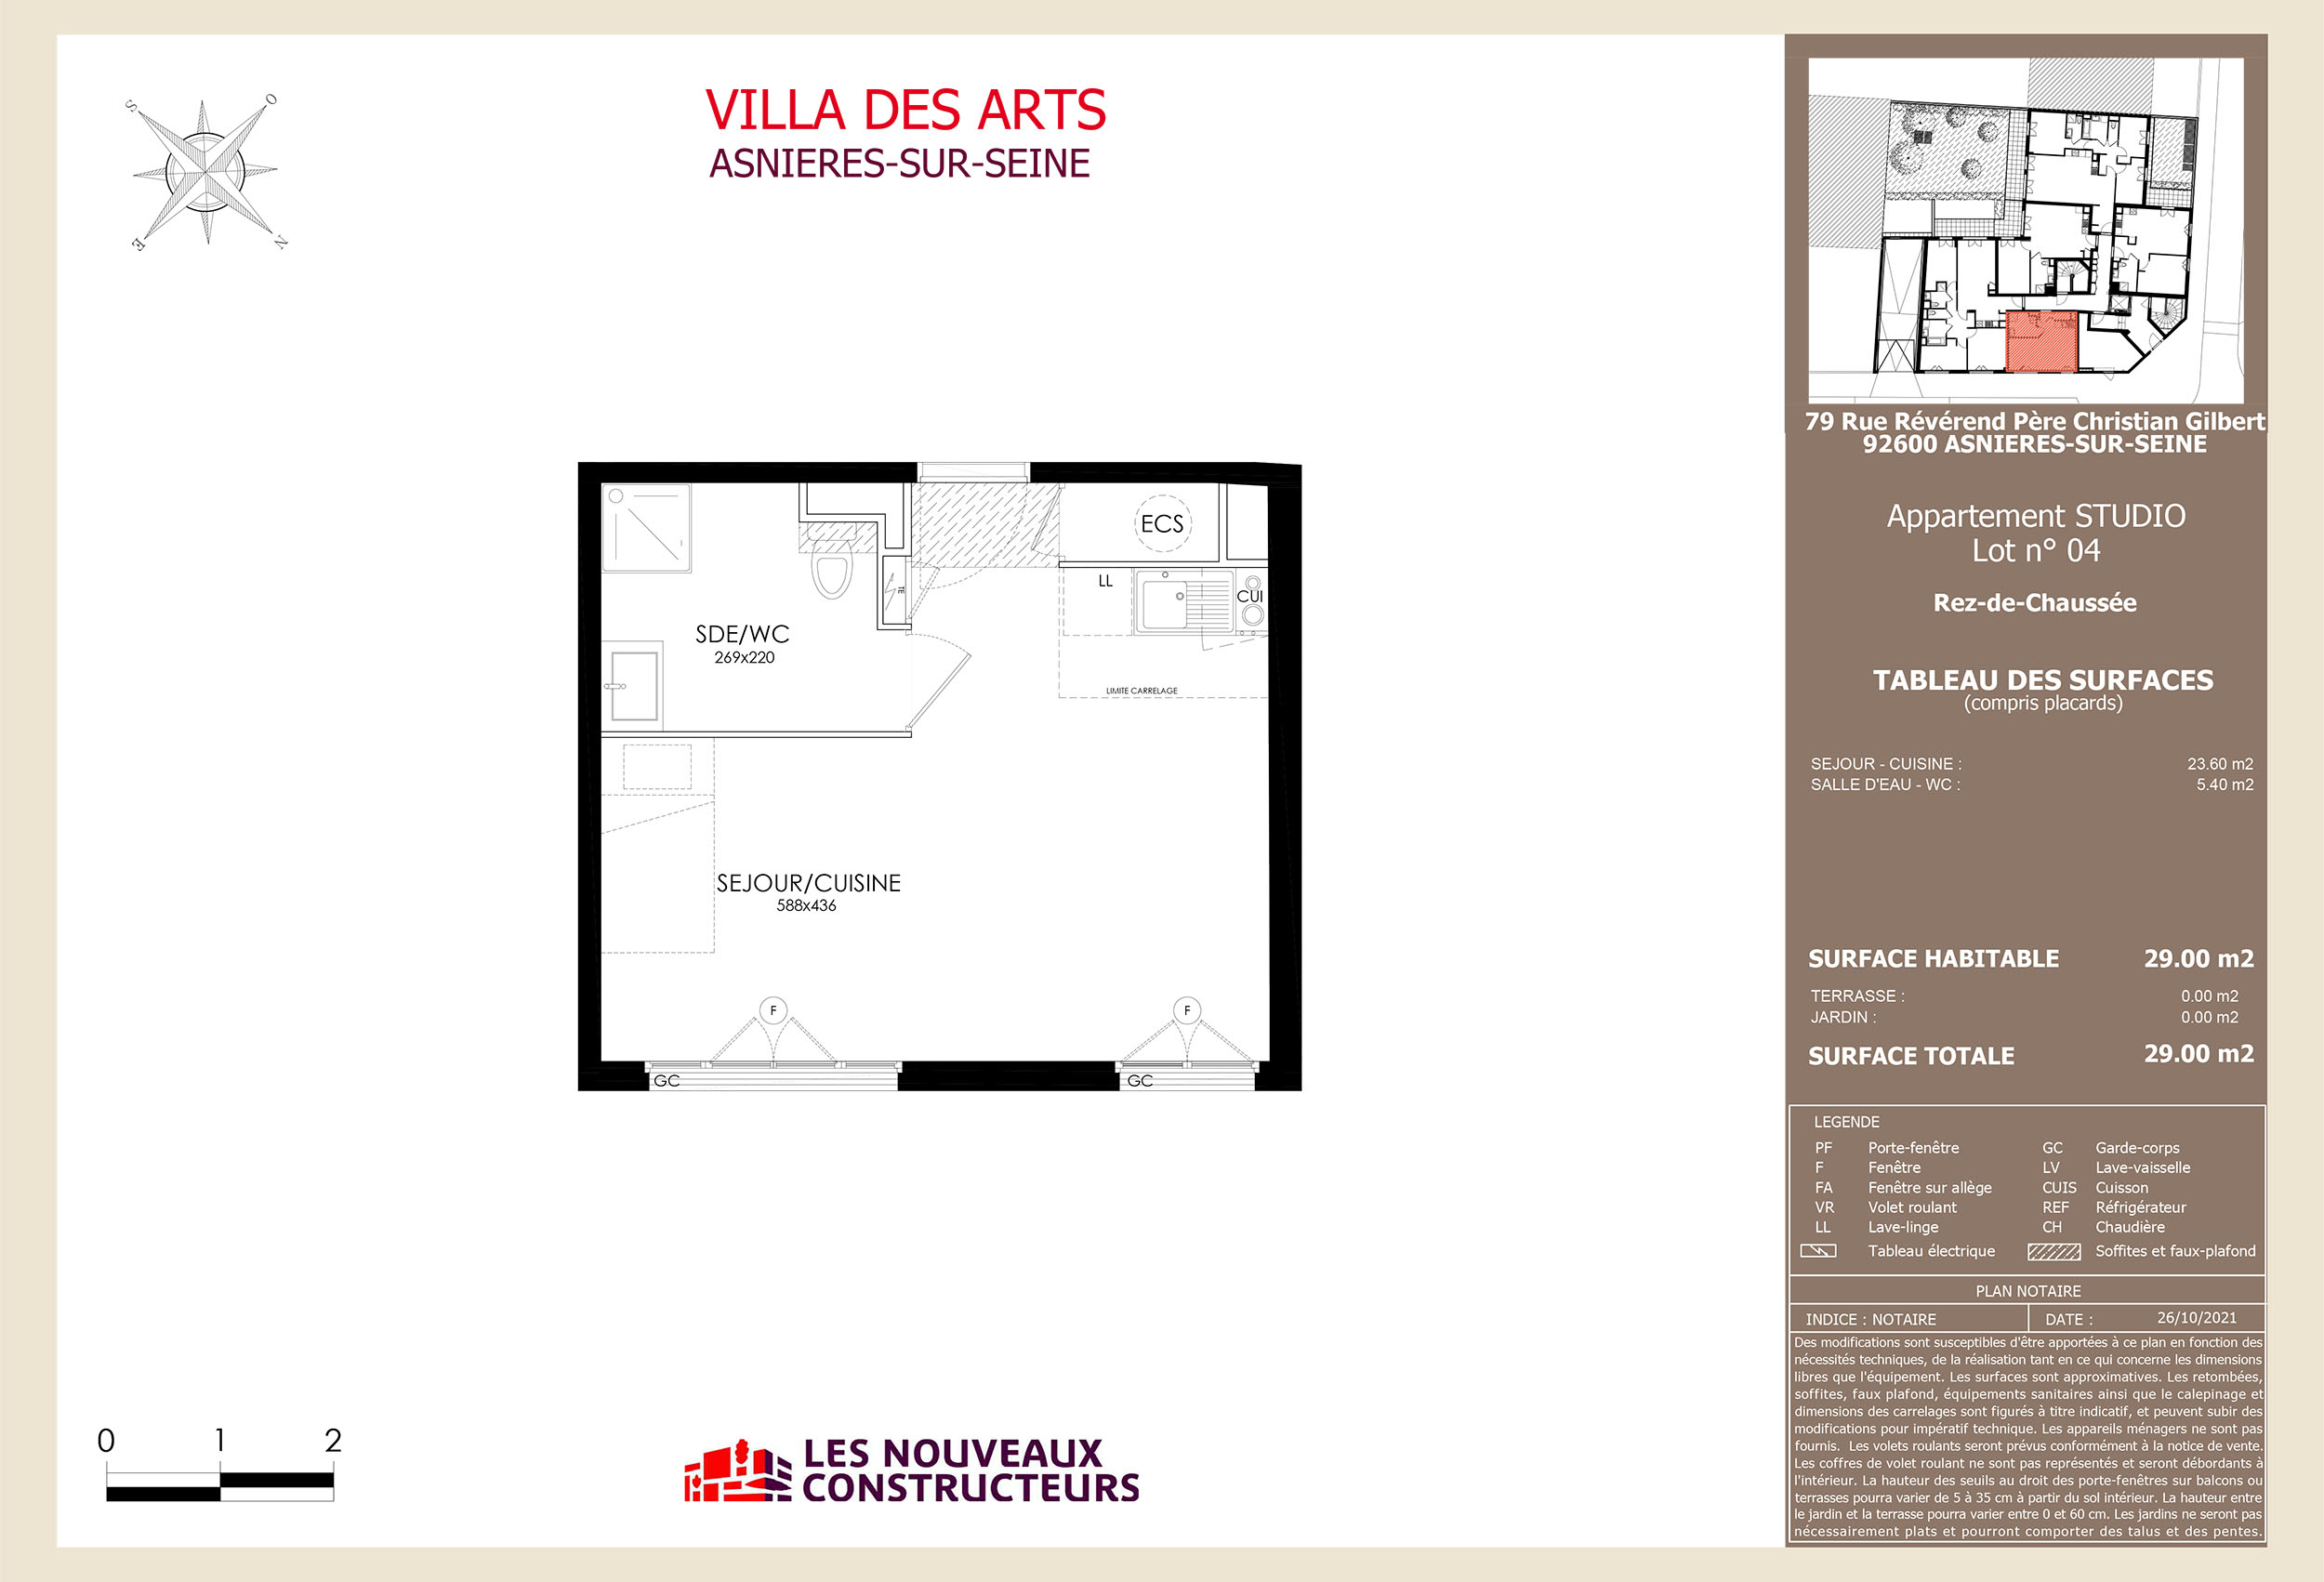 Asnieres - Villa Des Arts - Lot 04